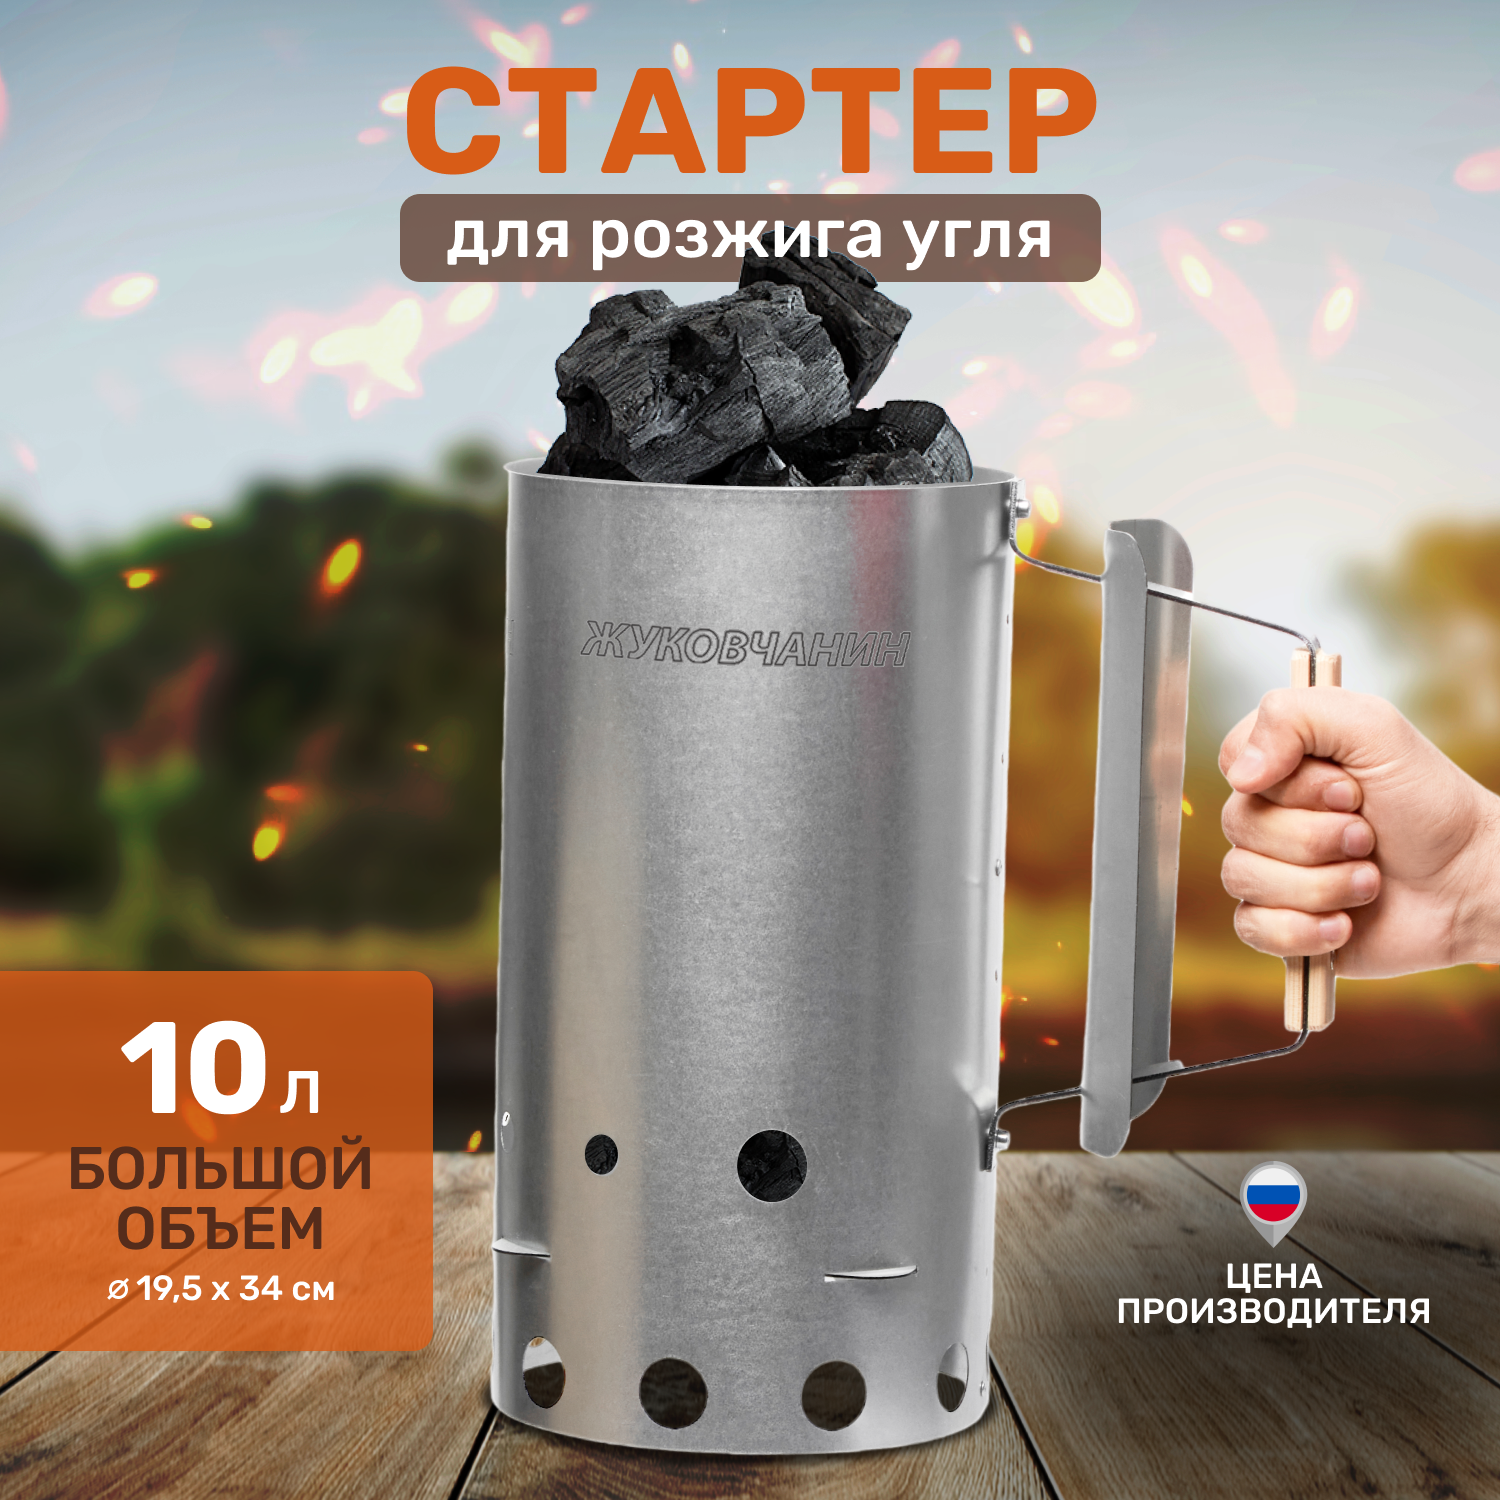 Стартер для розжига угля Жуковчанин 10 литров